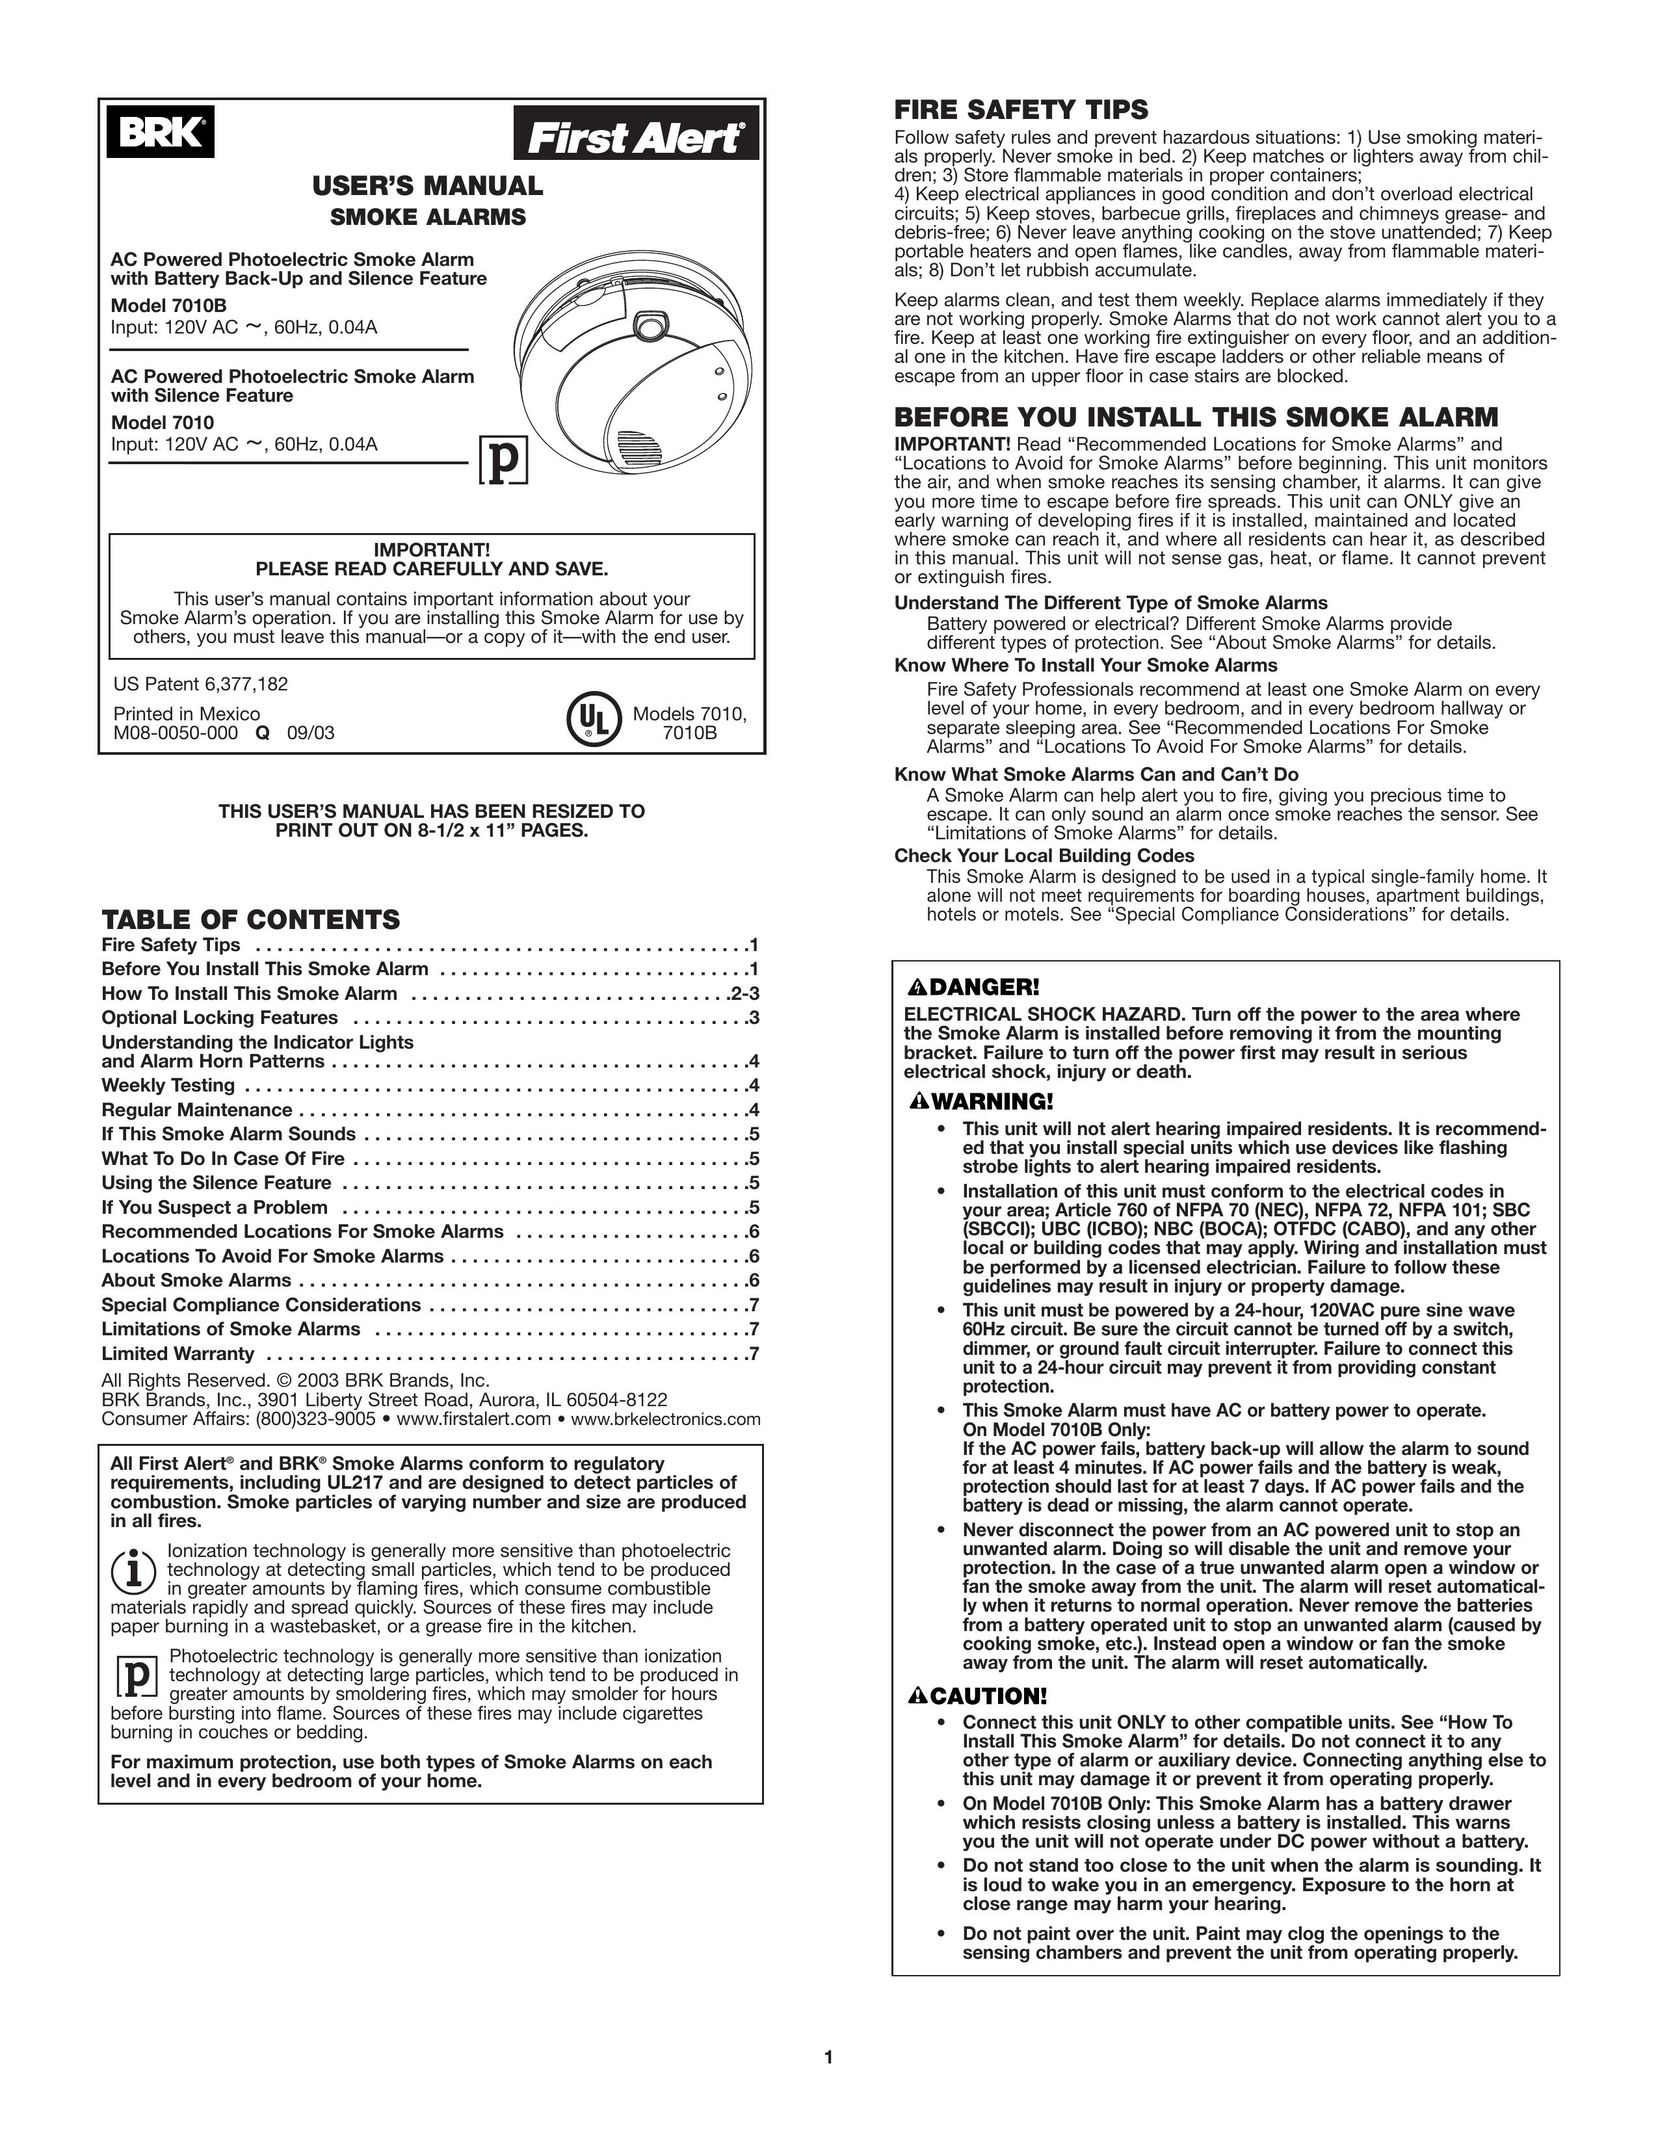 BRK electronic 7010 Smoke Alarm User Manual